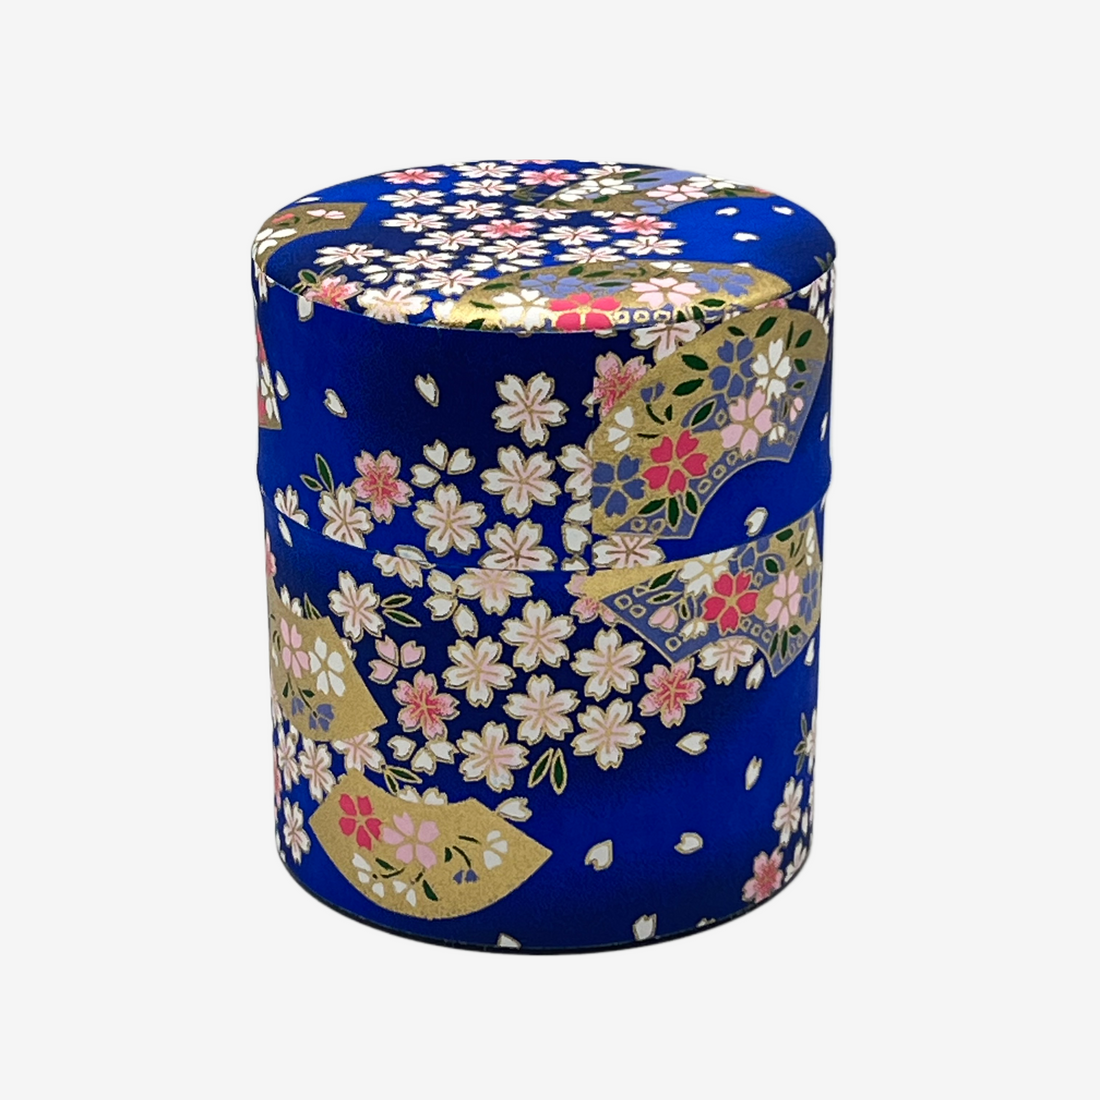 Matsuri Blue Washi Paper Wrapped Tea Canister - Japanese Chazutsu